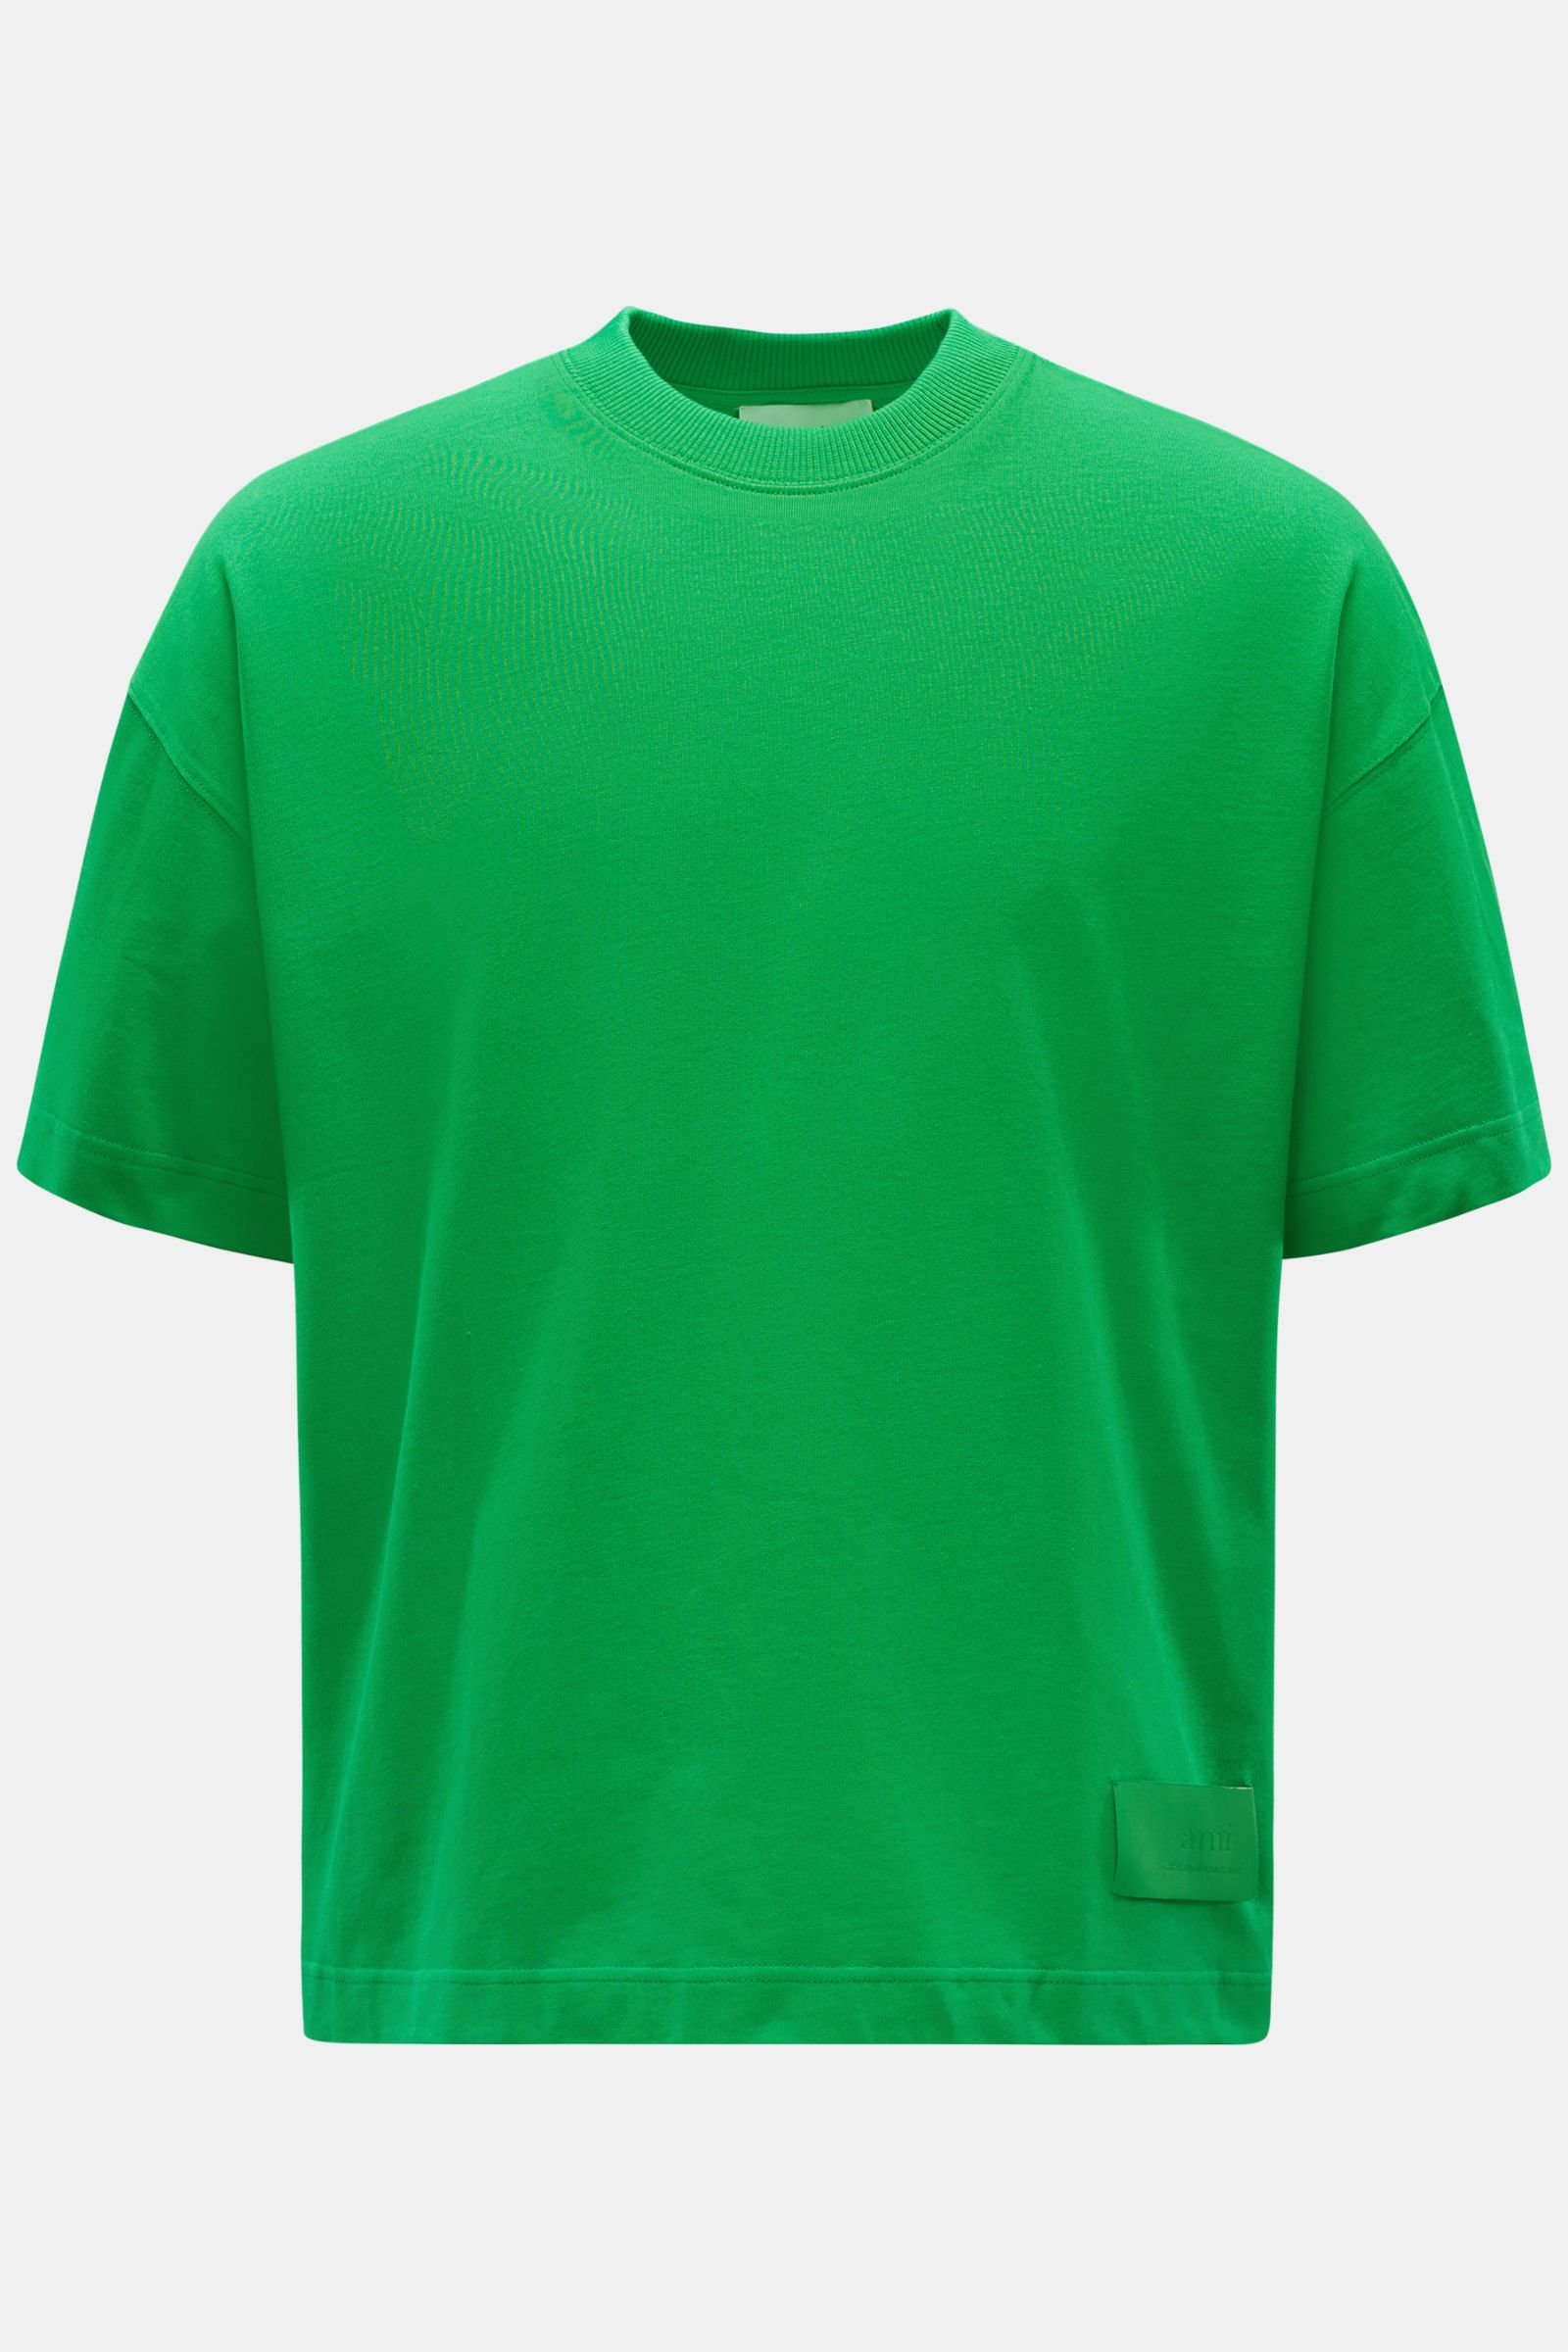 Crew neck T-shirt green